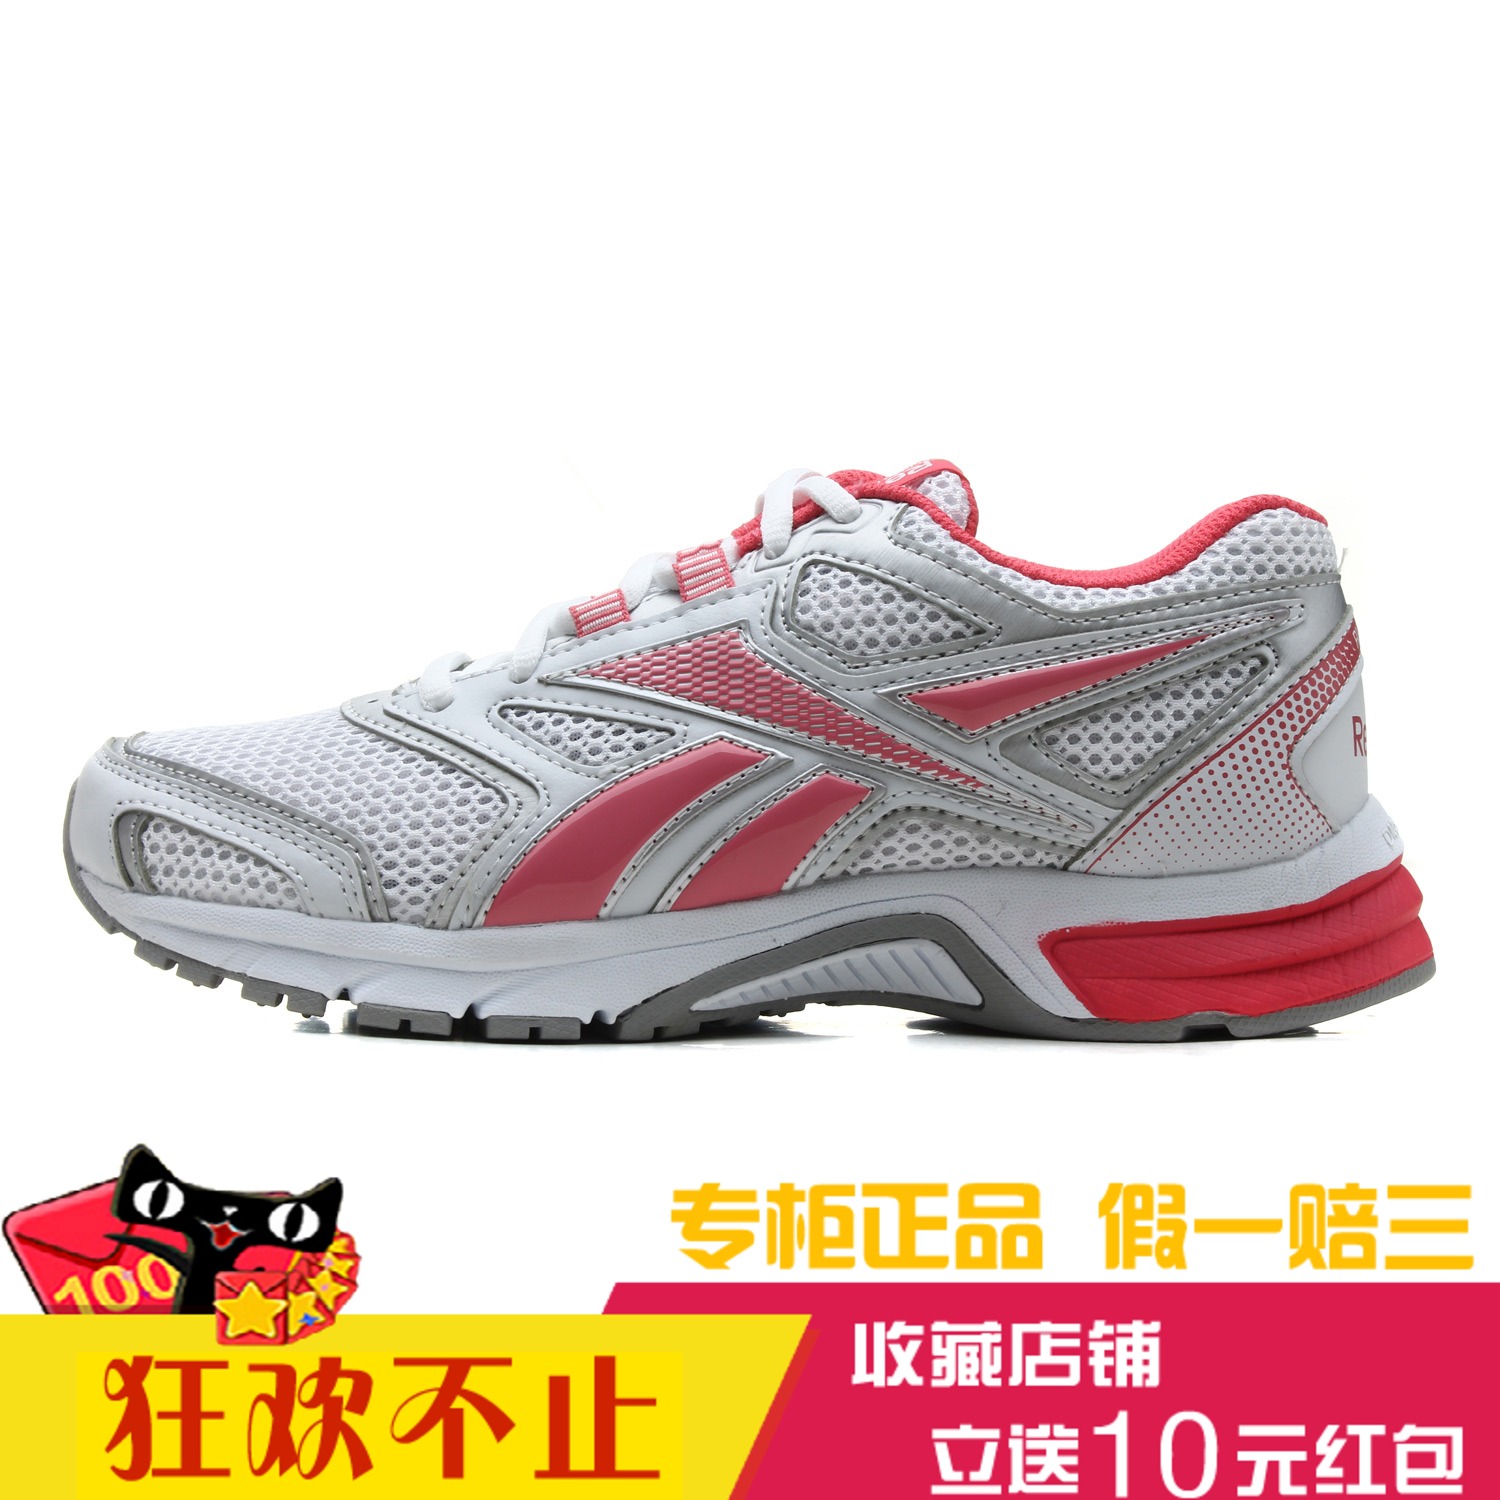 【省160元】特步跑步鞋_特步 竞速160X 男款专业马拉松跑步鞋-什么值得买